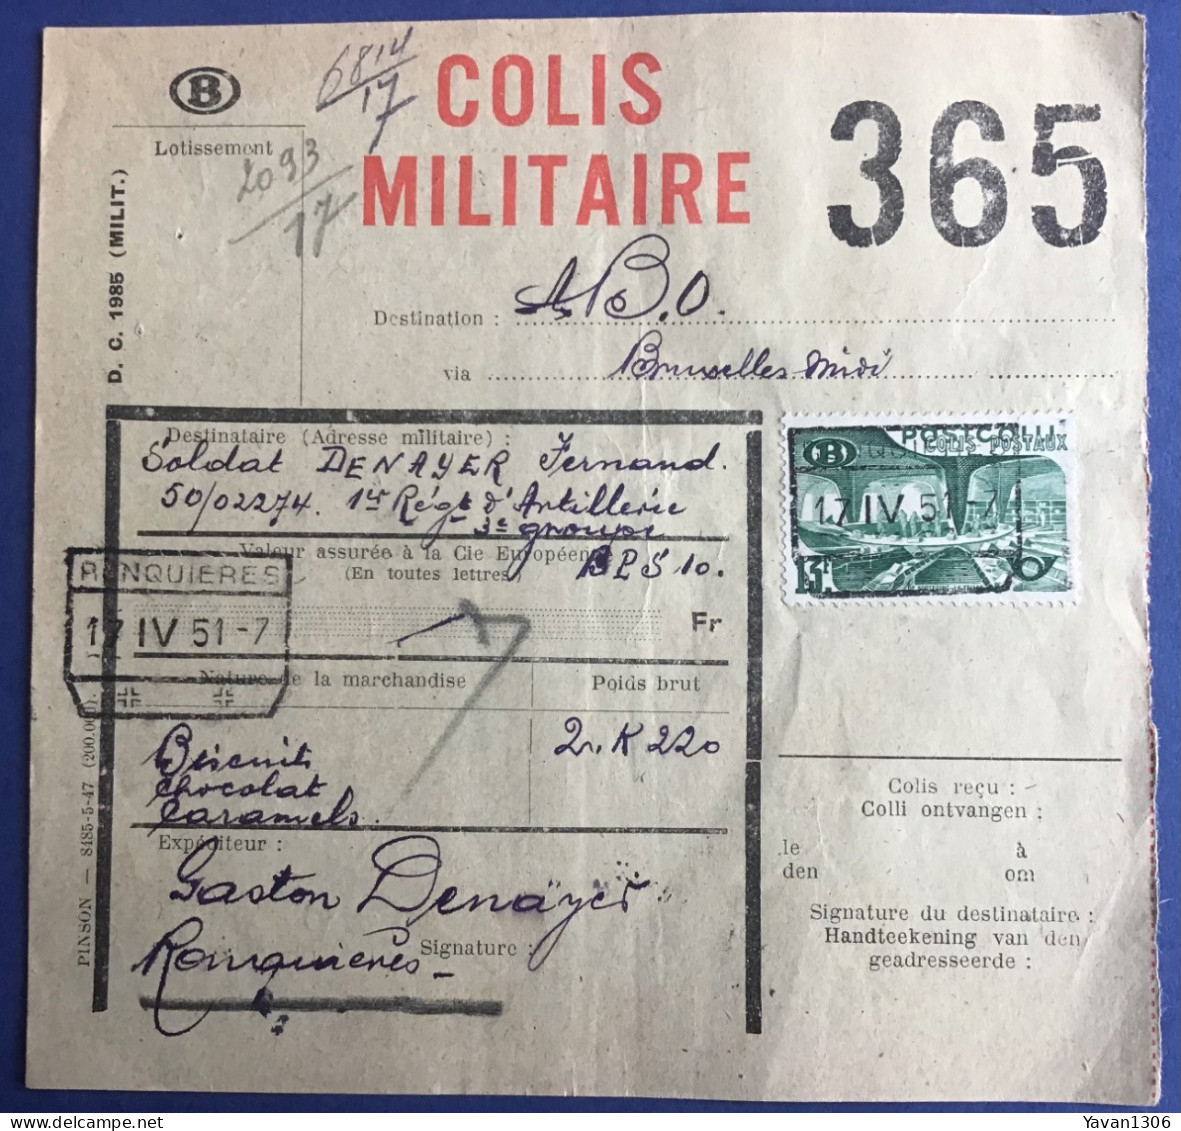 Ronquieres  Expédition  D’un Colis Militaire Vers Le Soldat Denayer Fernand  17 Avril 1951 - Documentos & Fragmentos